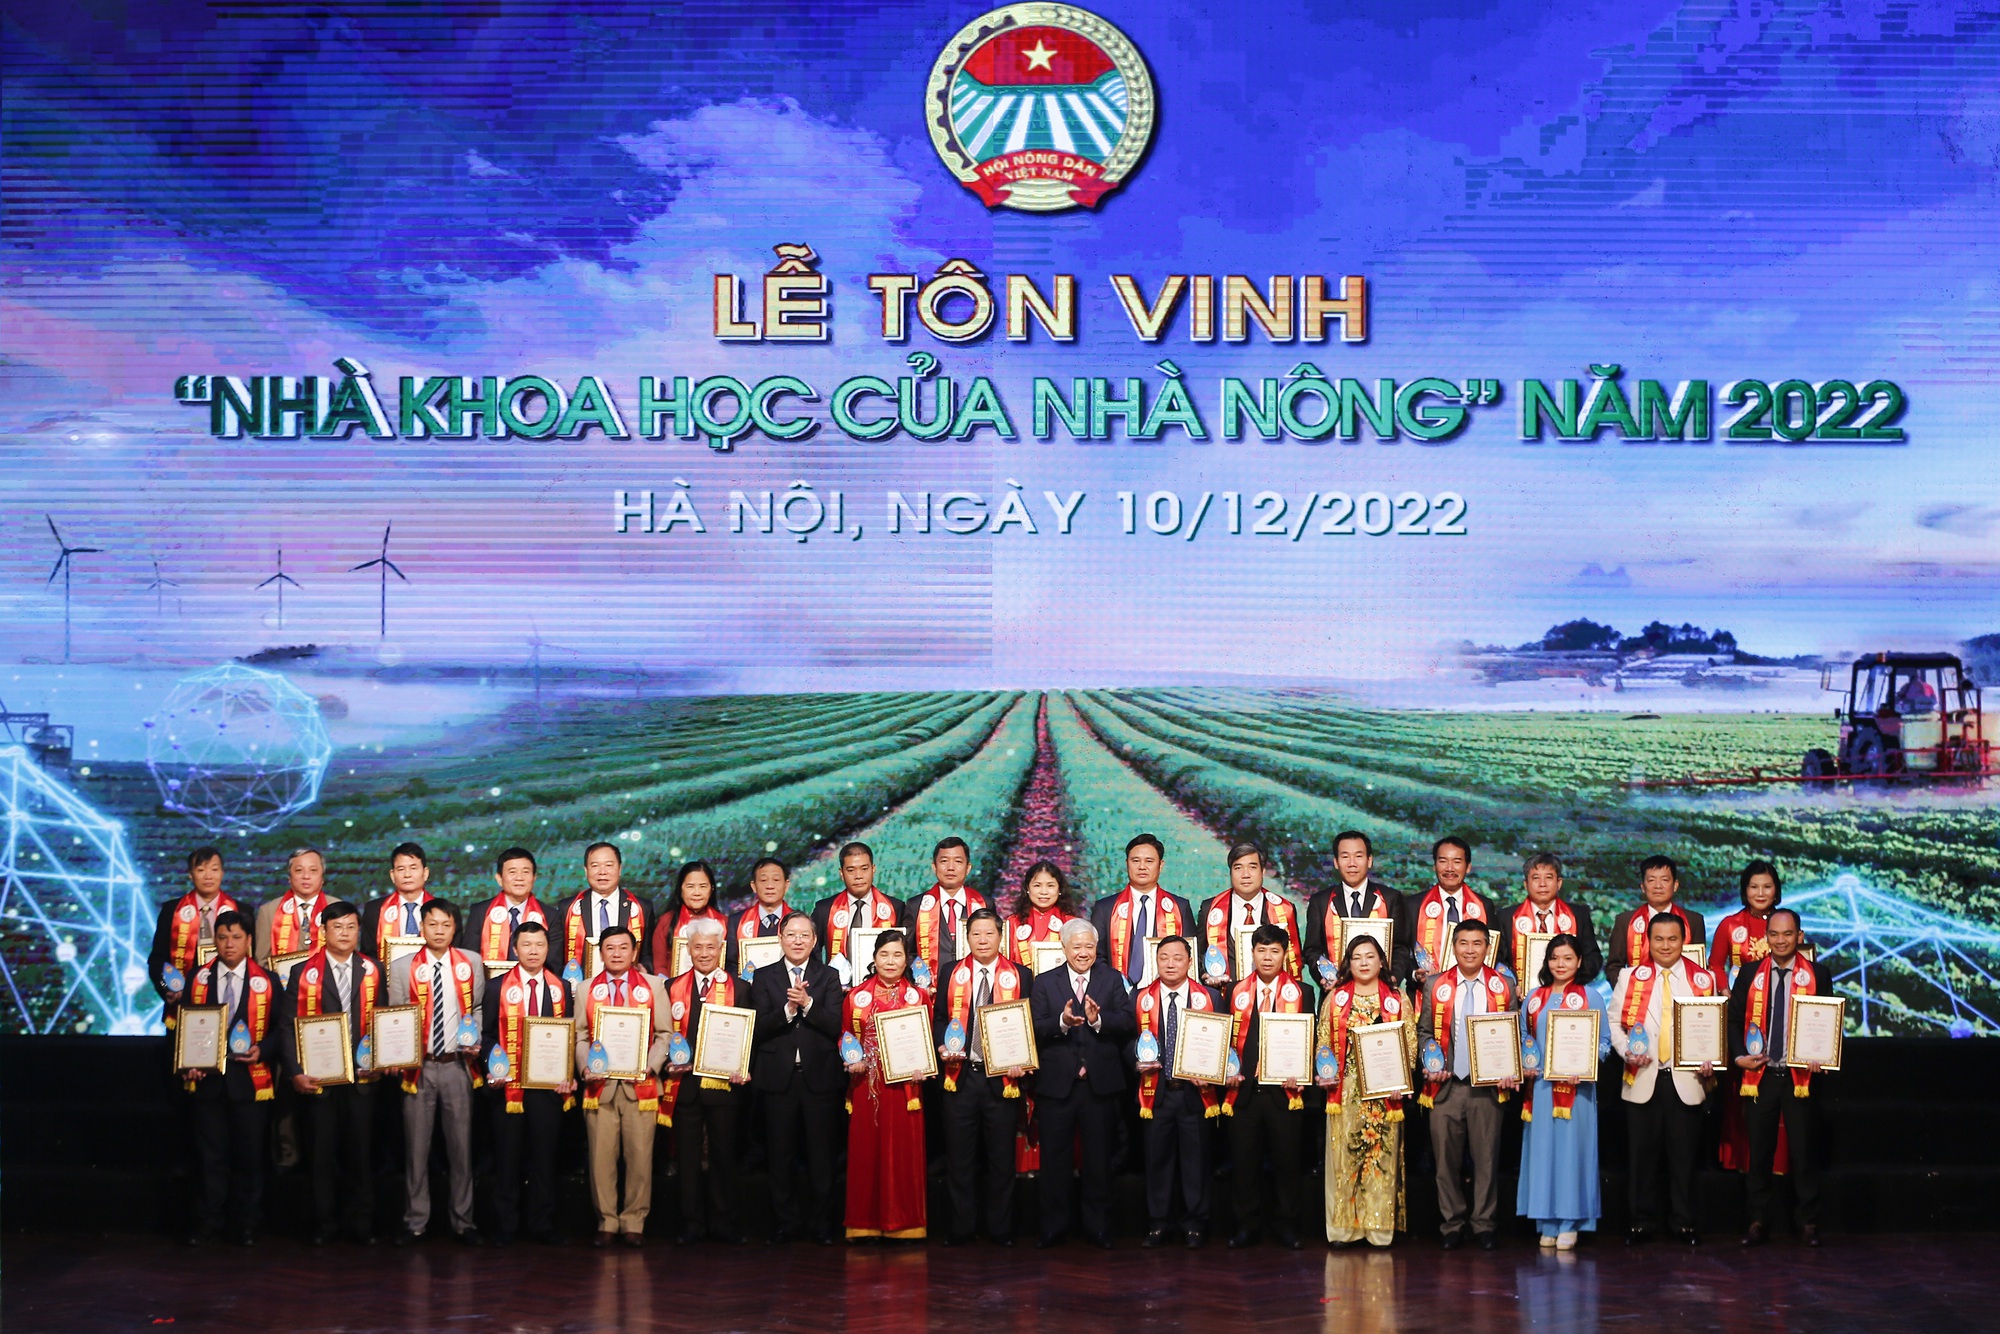 Hội Nông dân Việt Nam tôn vinh 62 Nhà khoa học của nhà nông năm 2022 - Ảnh 2.